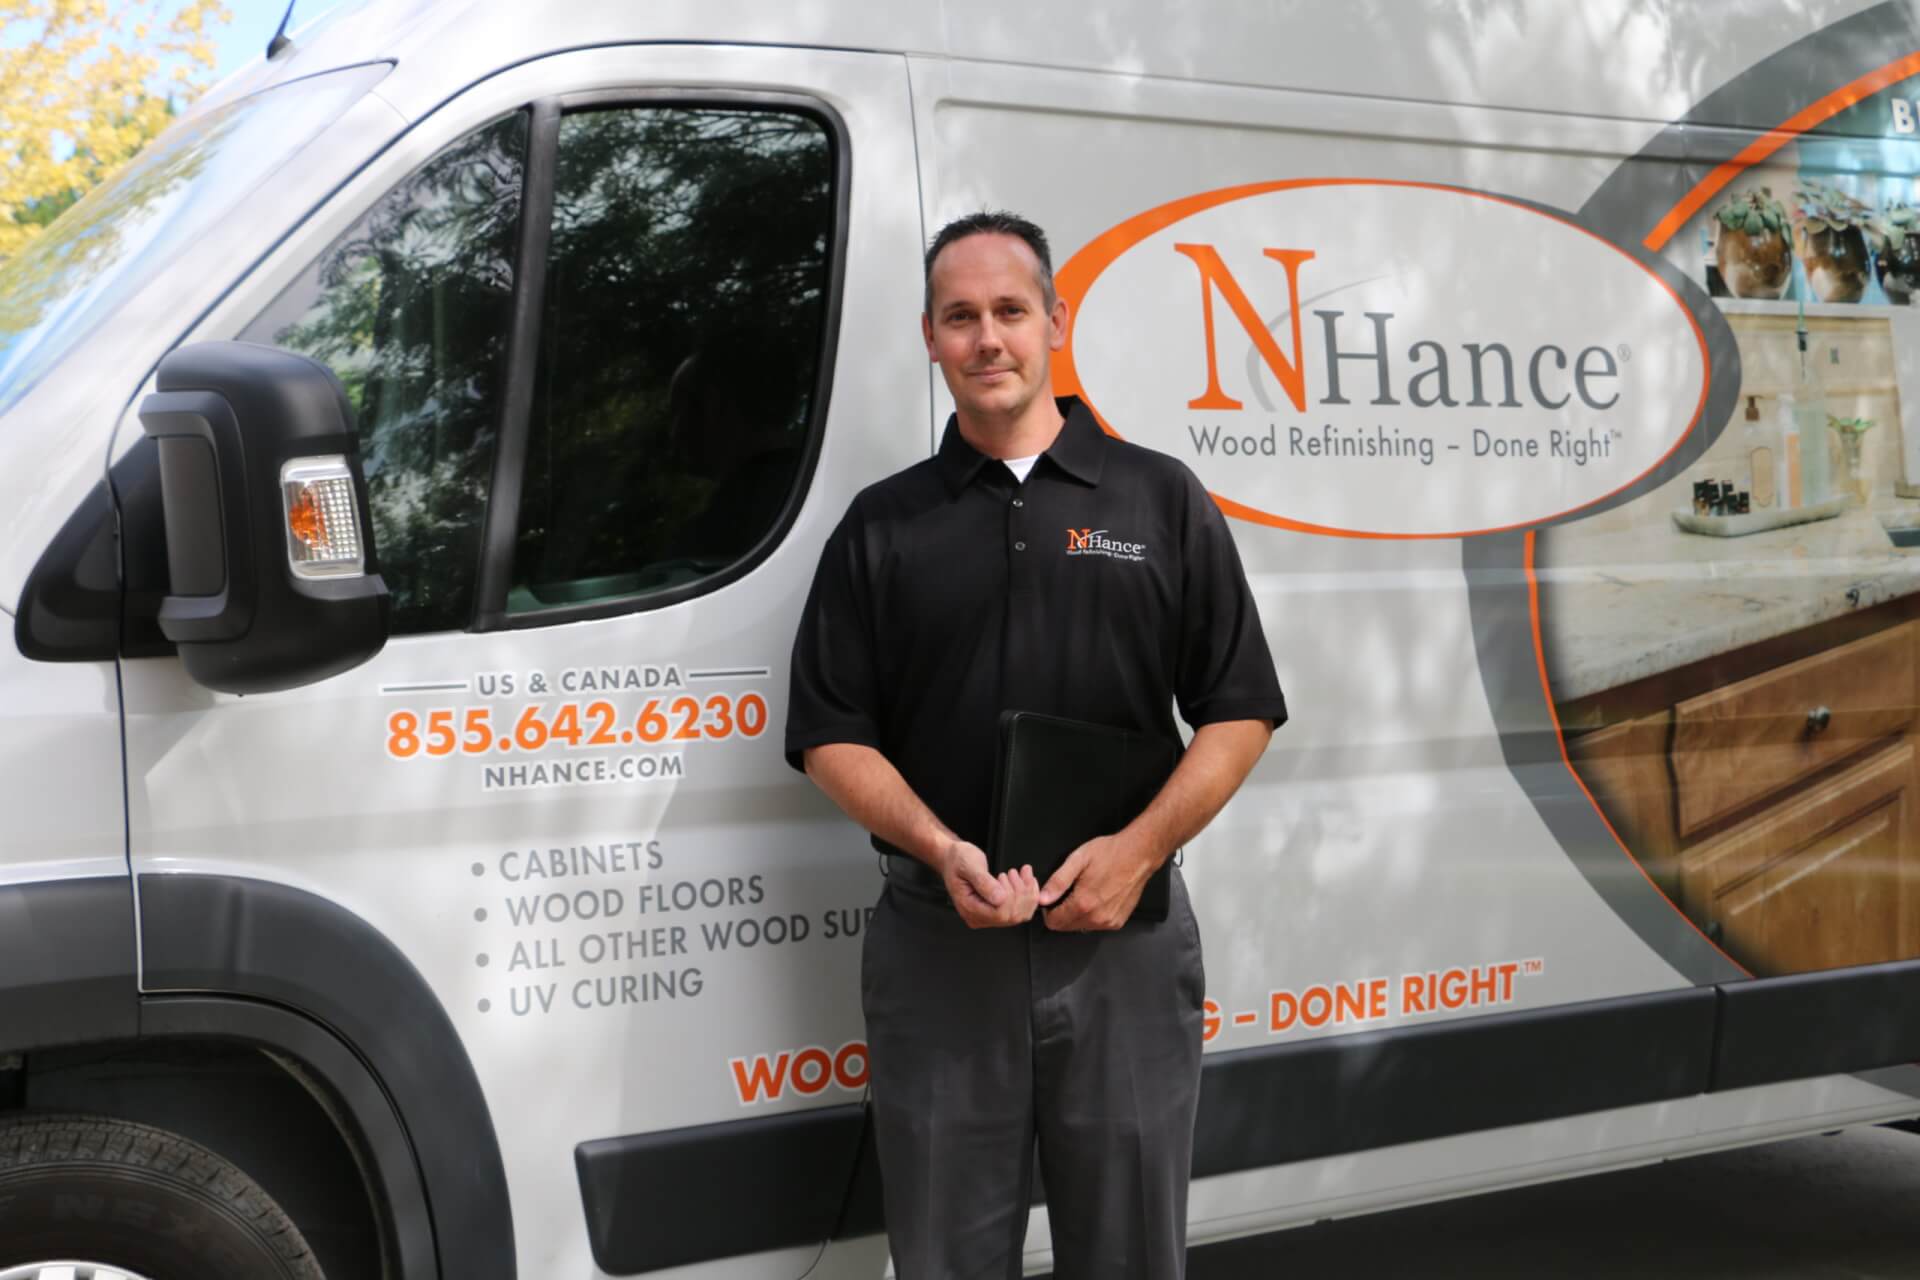 N-Hance worker and van